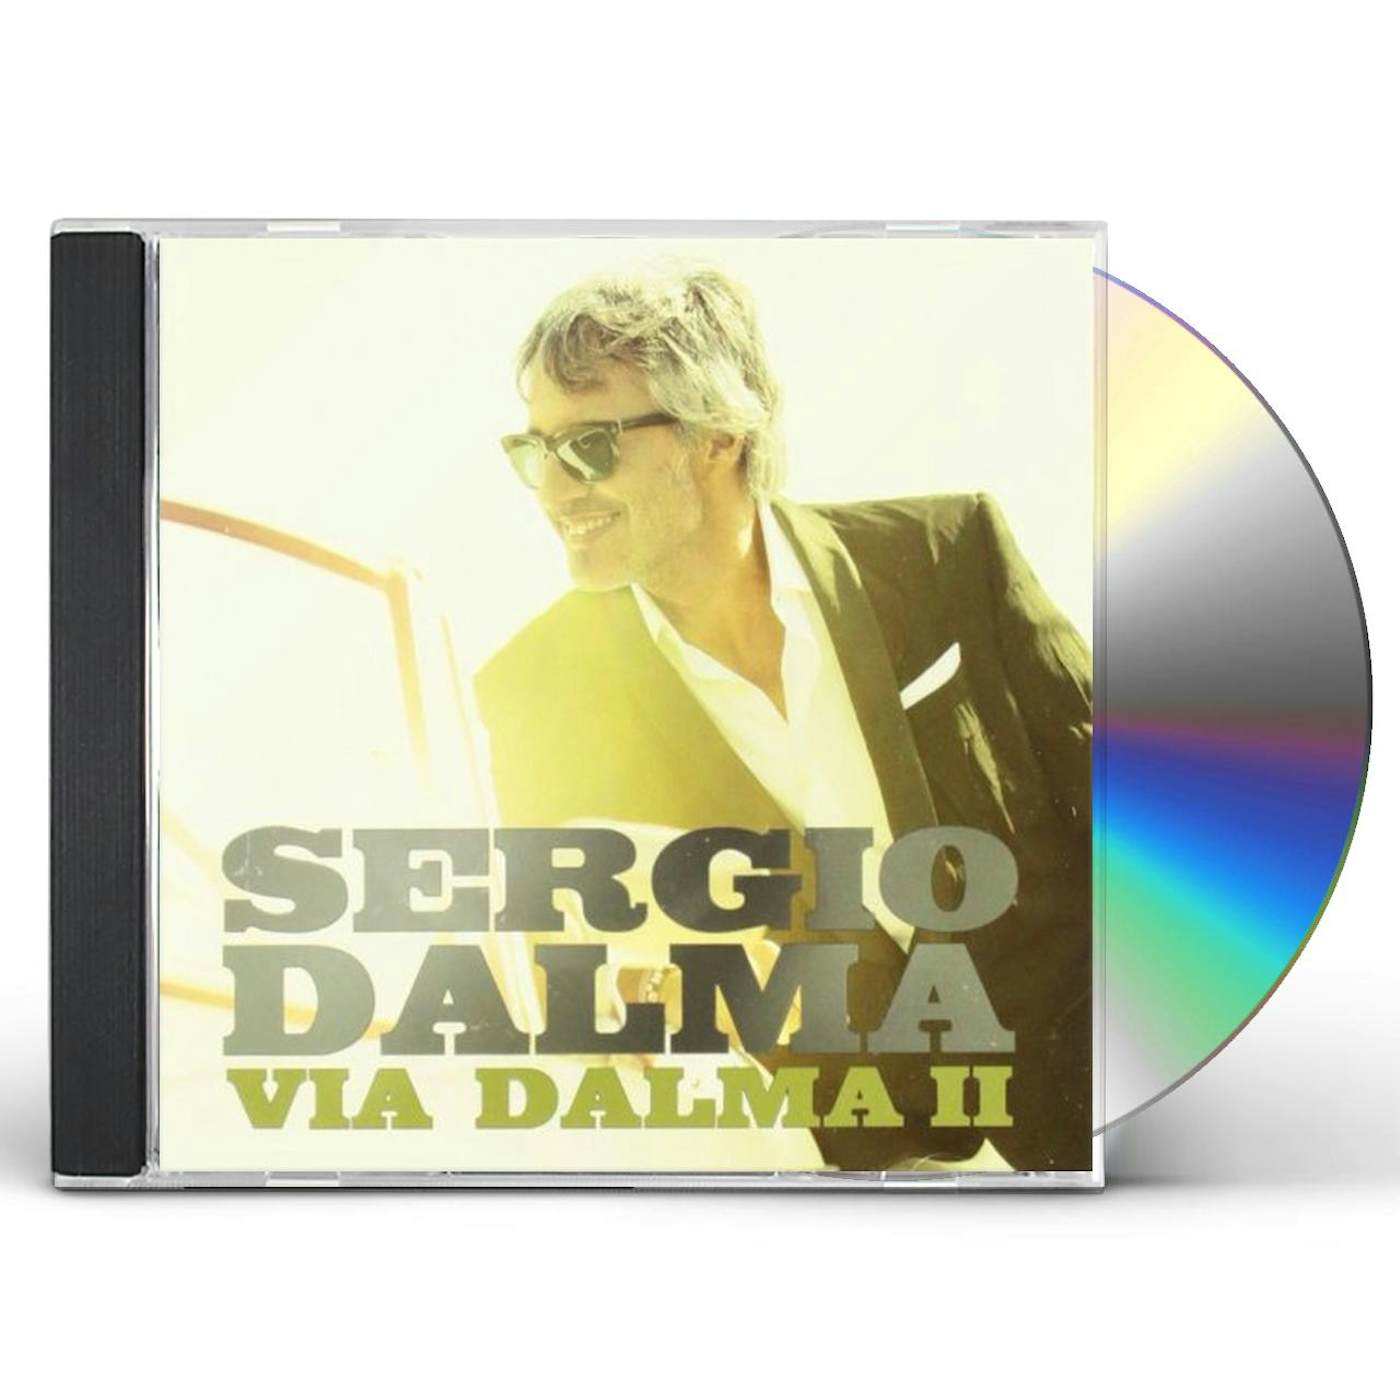 Sergio Dalma VIA DALMA II CD